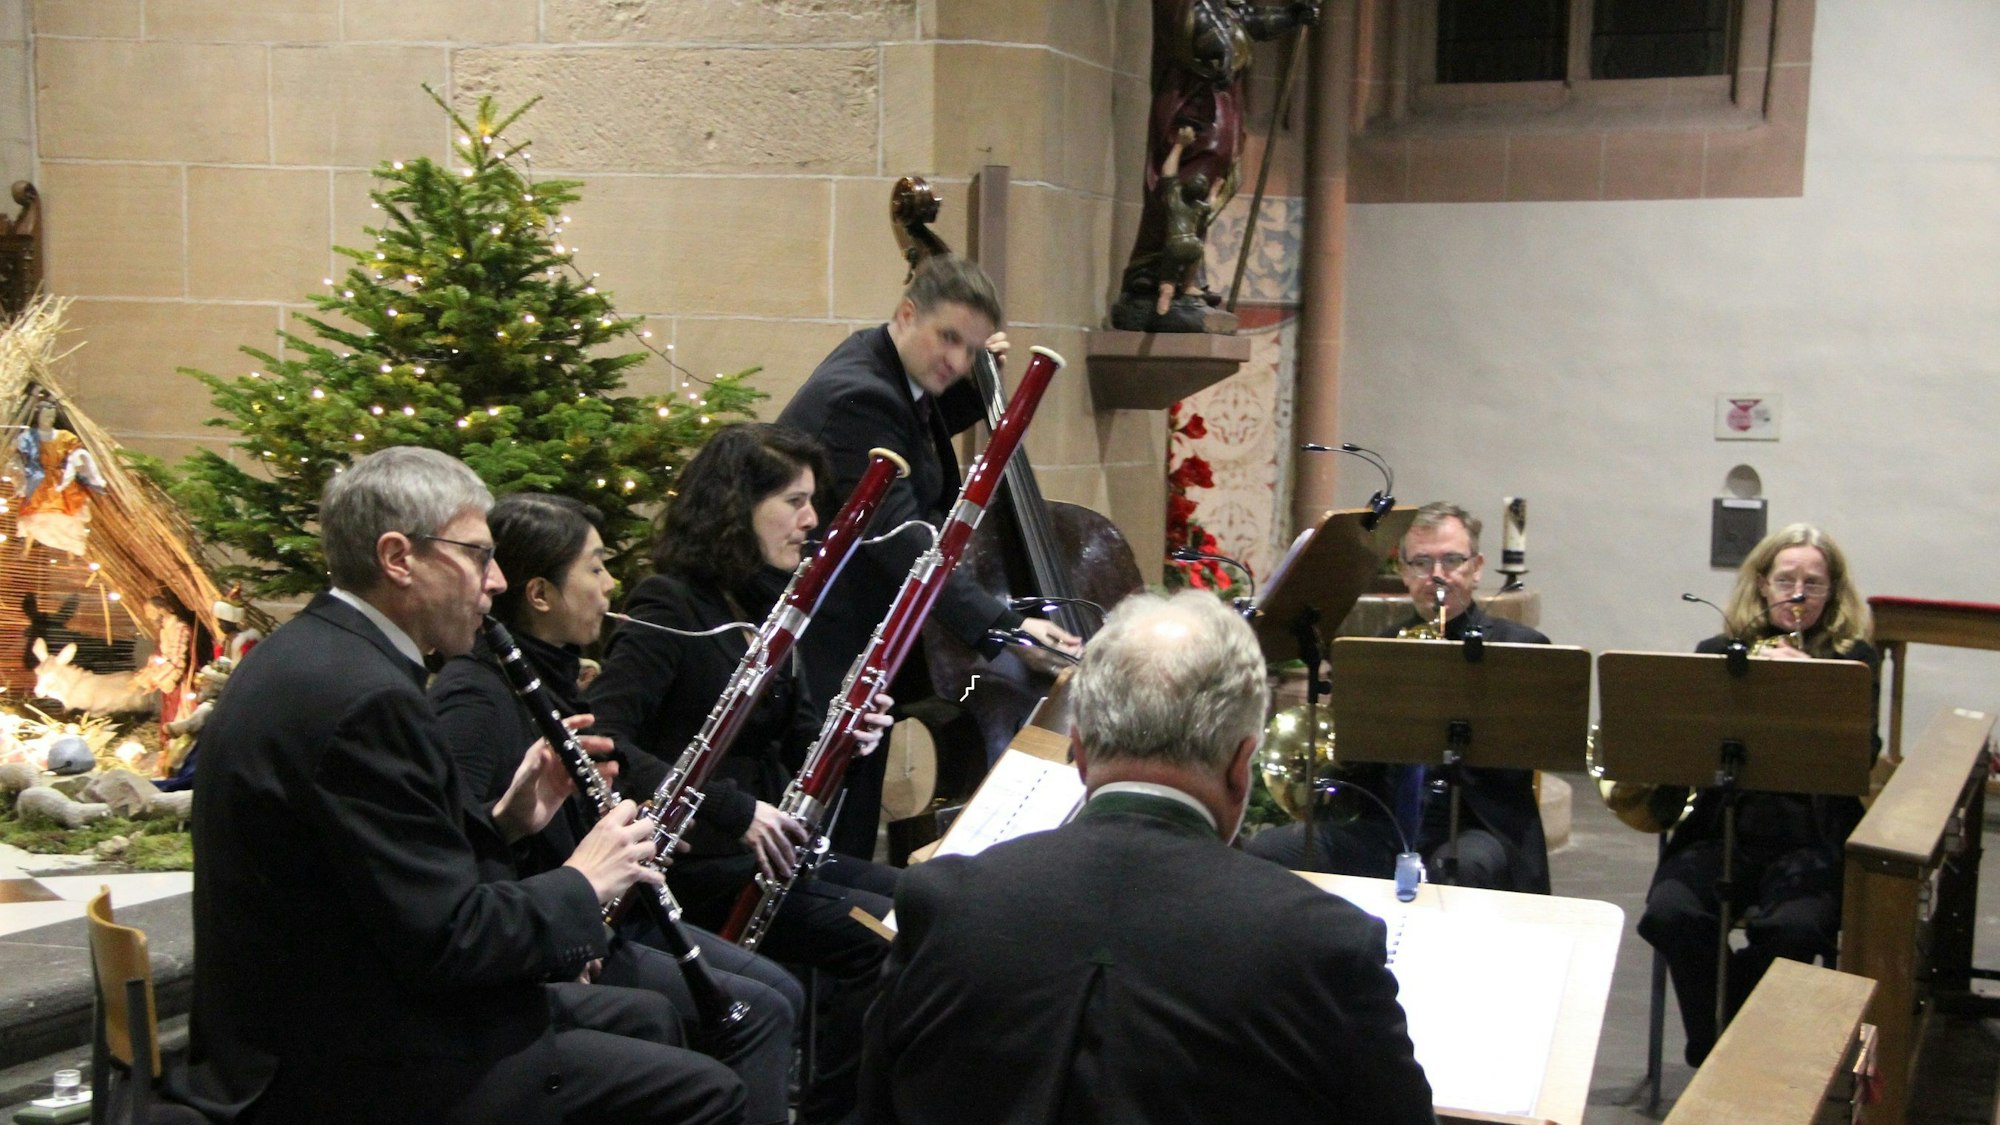 Sieben Musikerinnen und Musiker, unter anderem mit Klarinette, Fagott und Kontrabass, spielen in der Martinskirche. Vom Bassisten abgesehen, sitzen sie. Im Hintergrund stehen die Weihnachtskrippe und ein Weihnachtsbaum.